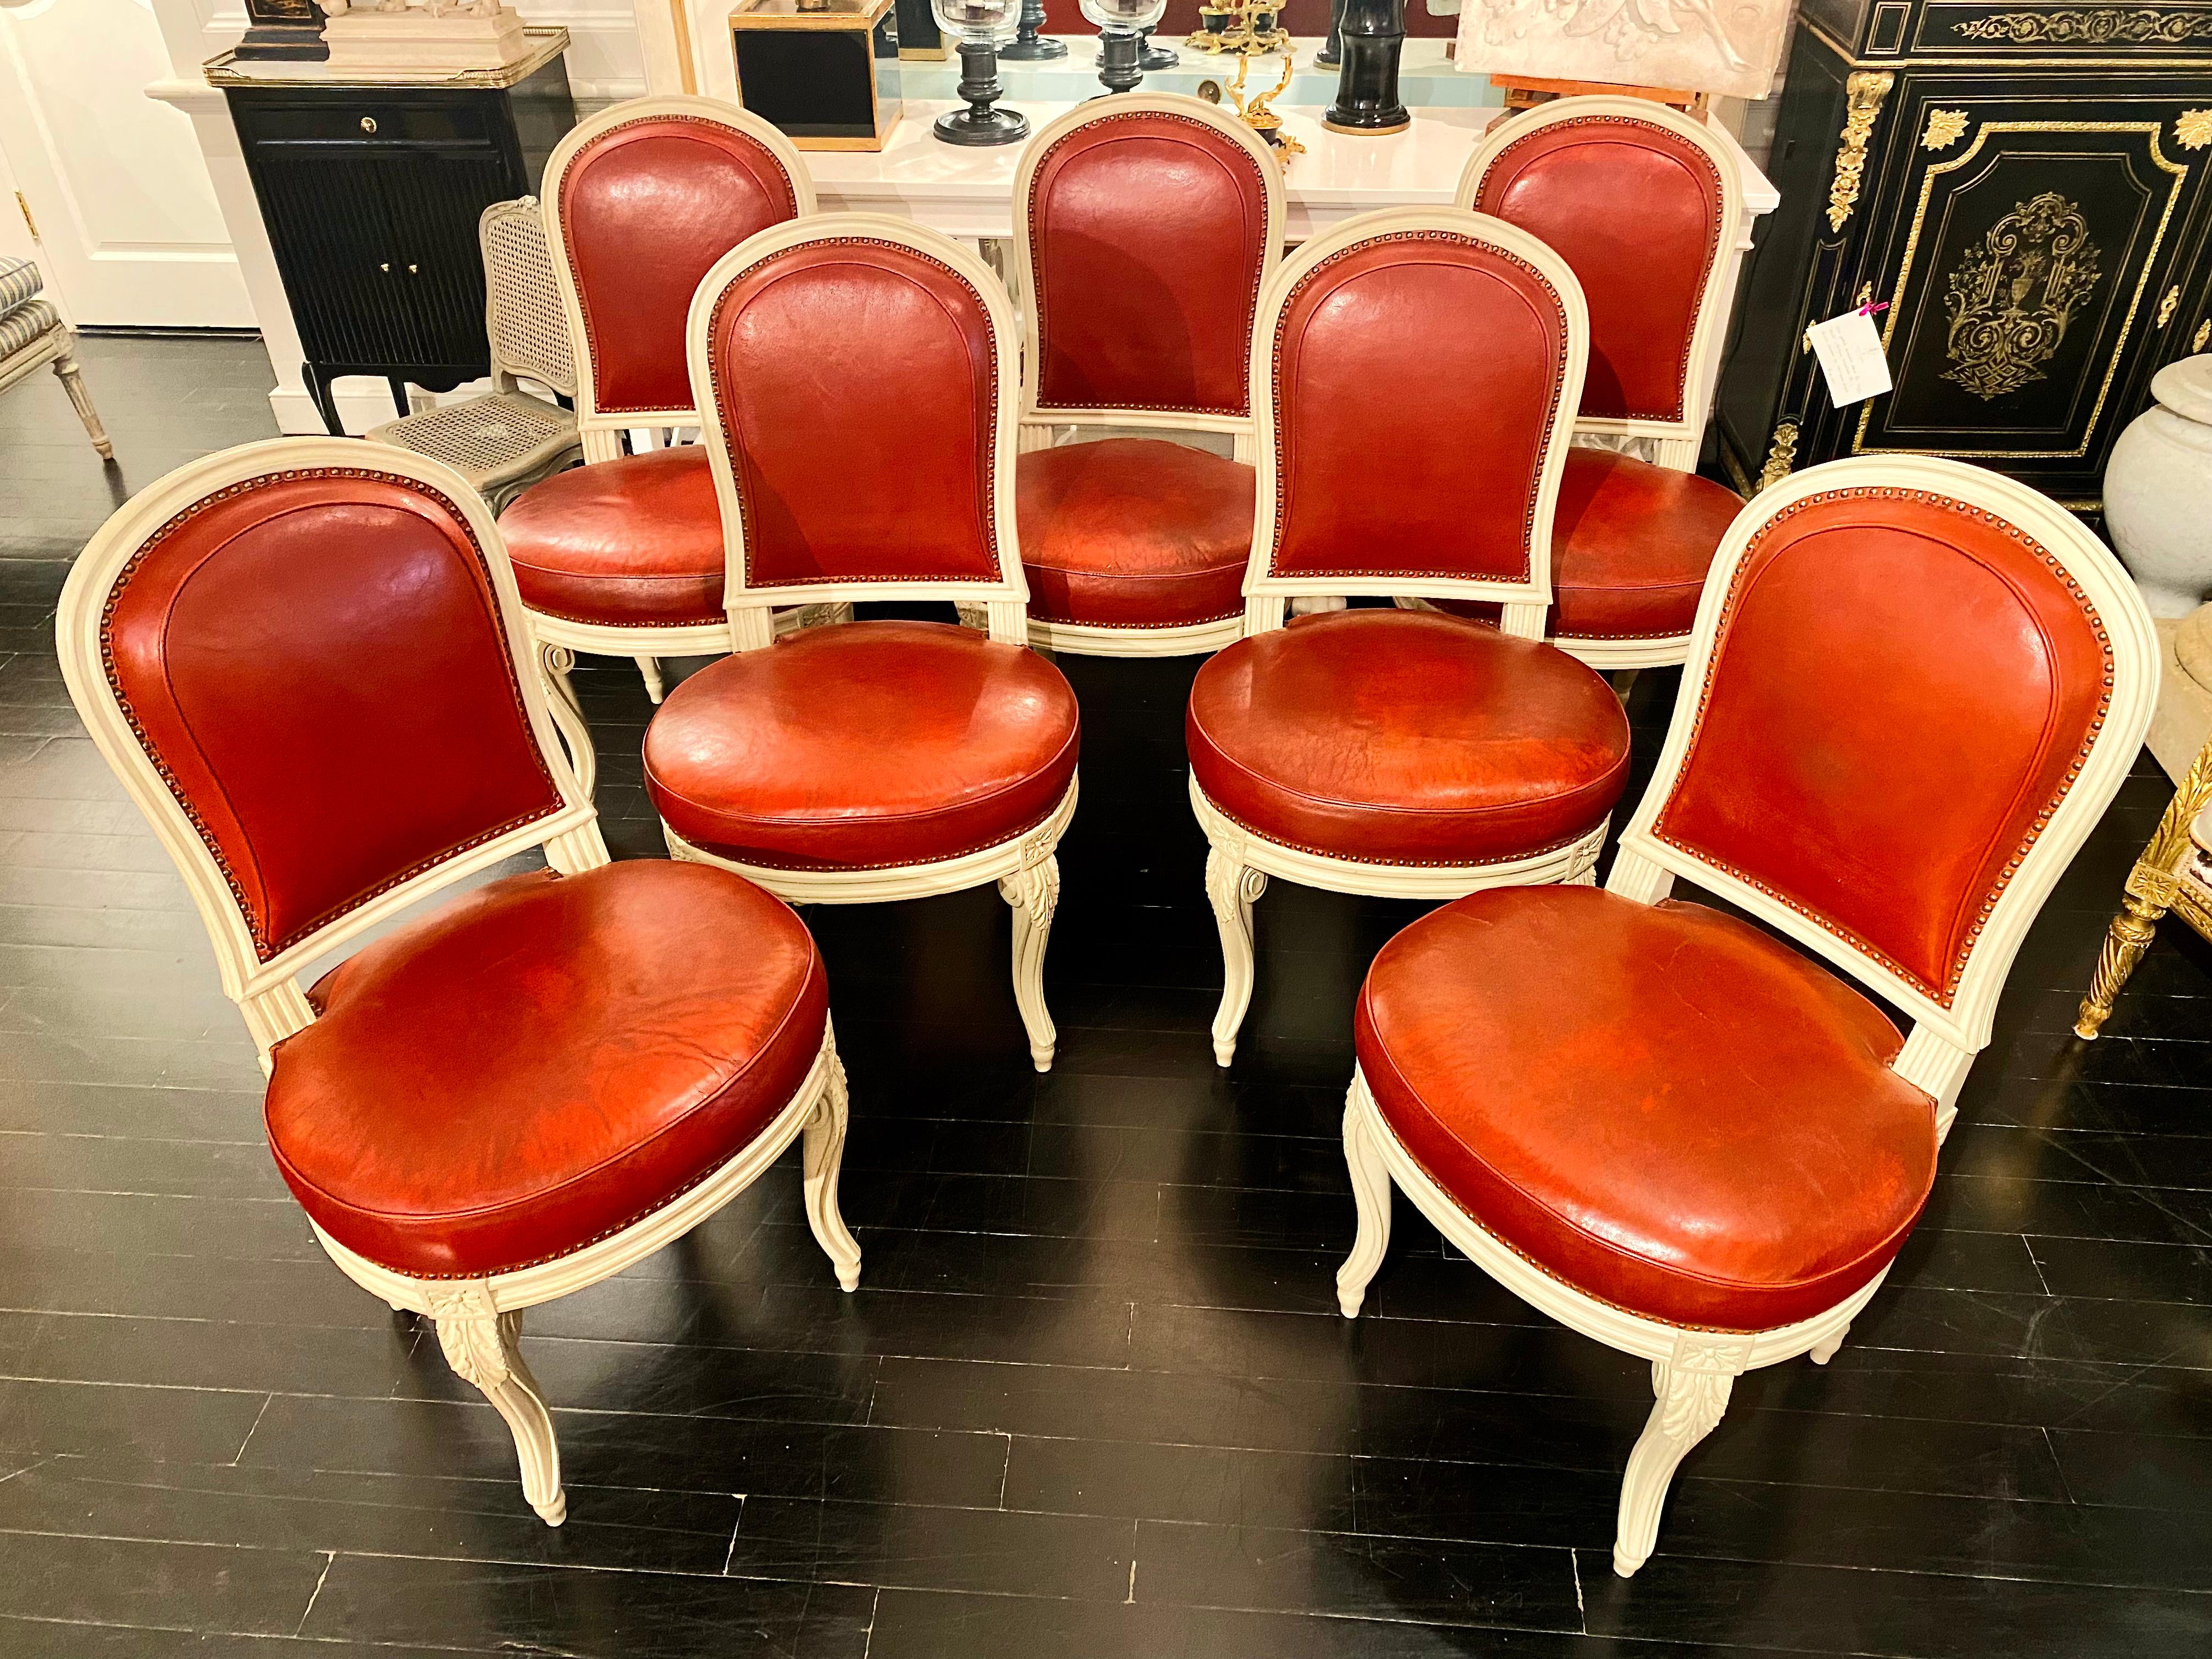 Französische Stühle im Louis XVI-Stil in der Art von Jacob, möglicherweise Maison Jansen.

Außergewöhnlicher Satz von sieben weiß patinierten Stühlen in der Art von Georges Jacob, mit butterweichen Lederbezügen in einem exquisiten dunkelroten Ton.